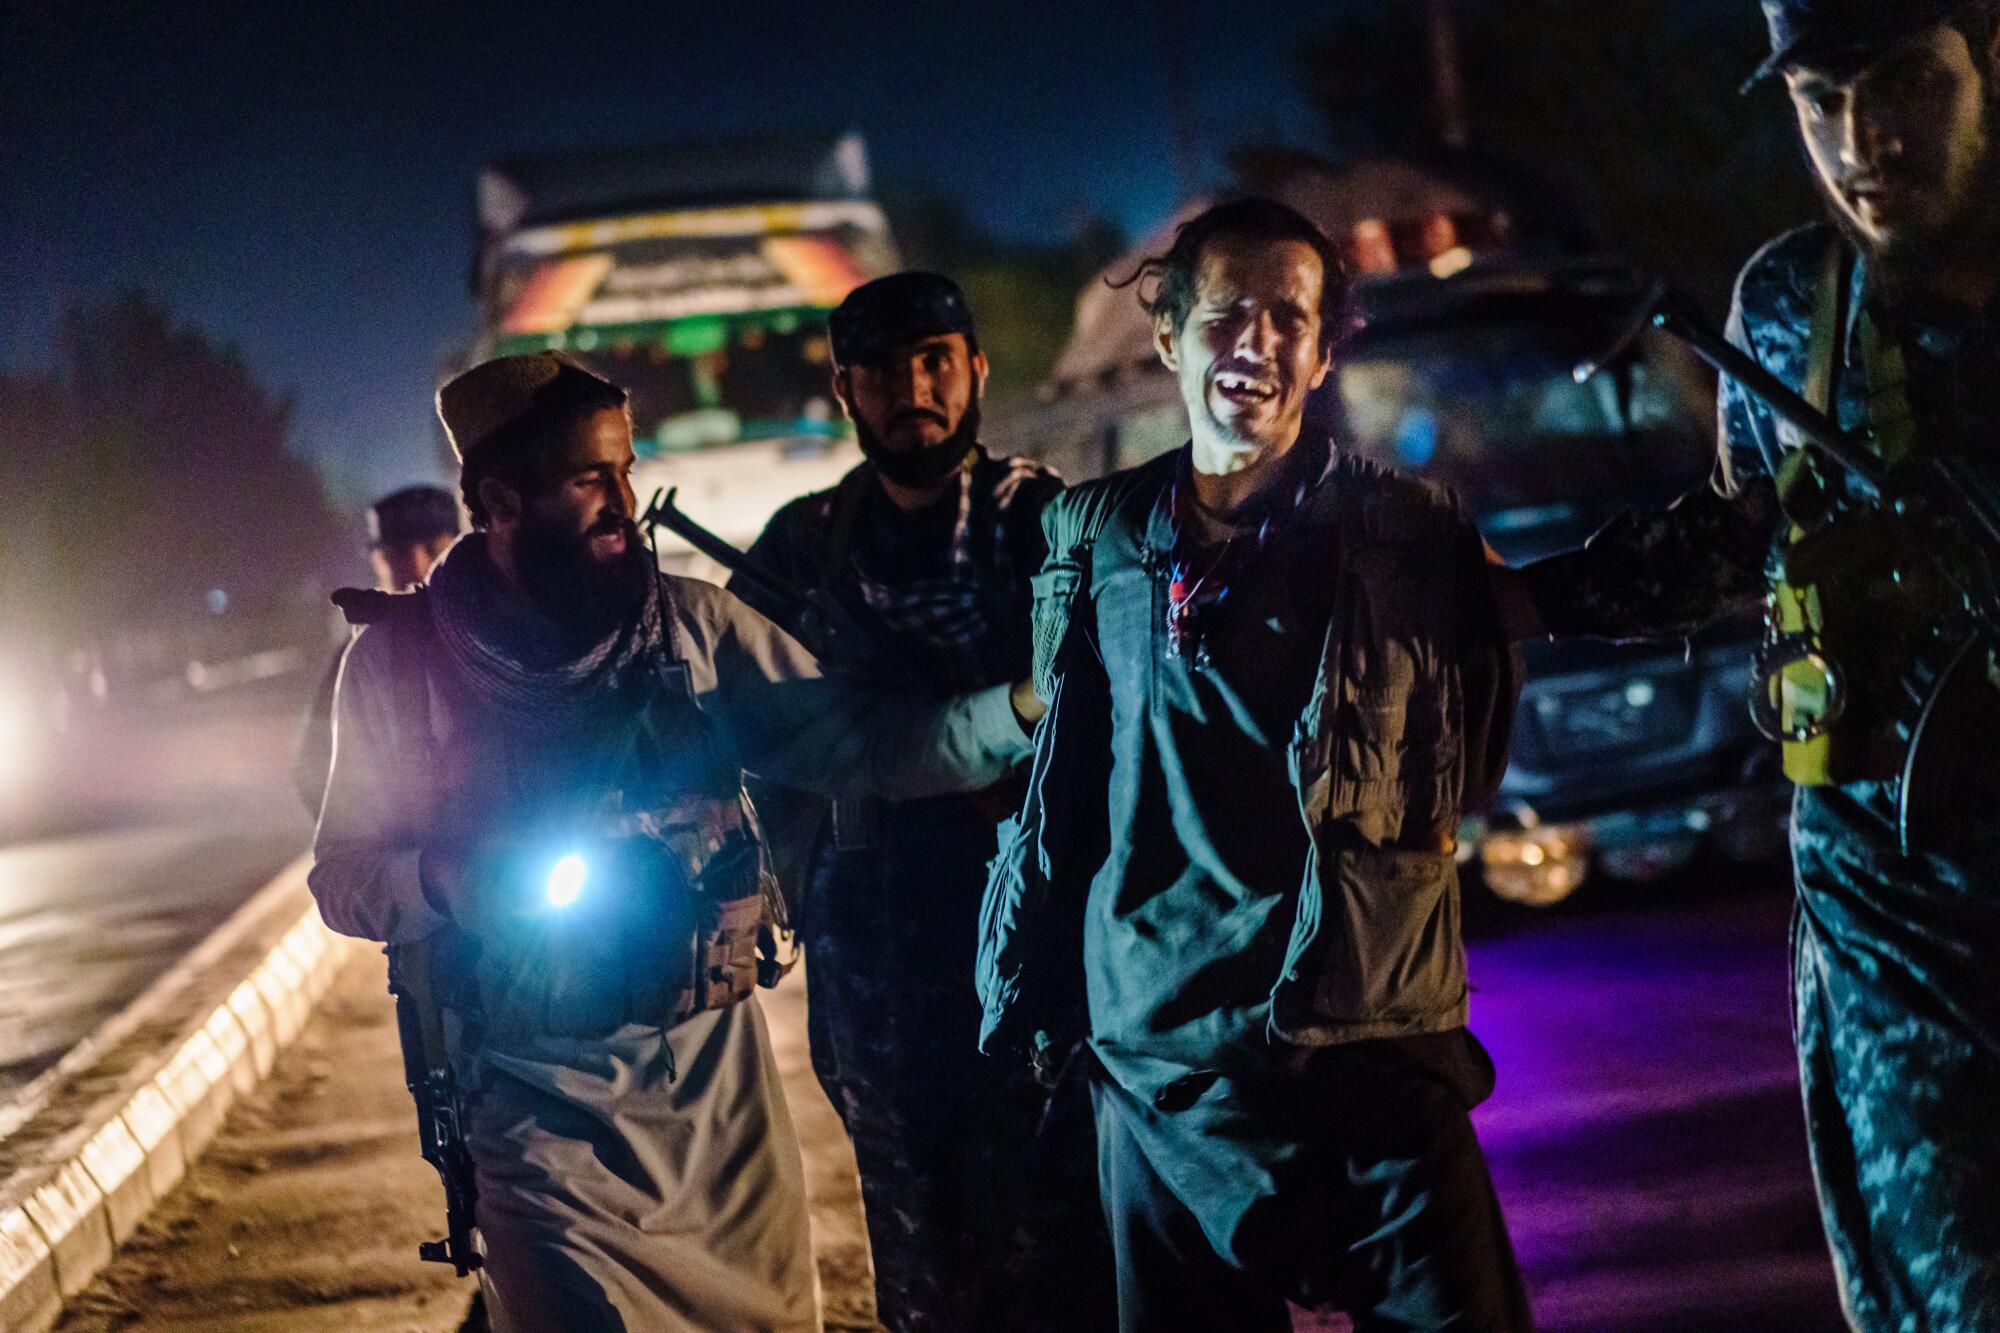 Taliban members take a man into custody.